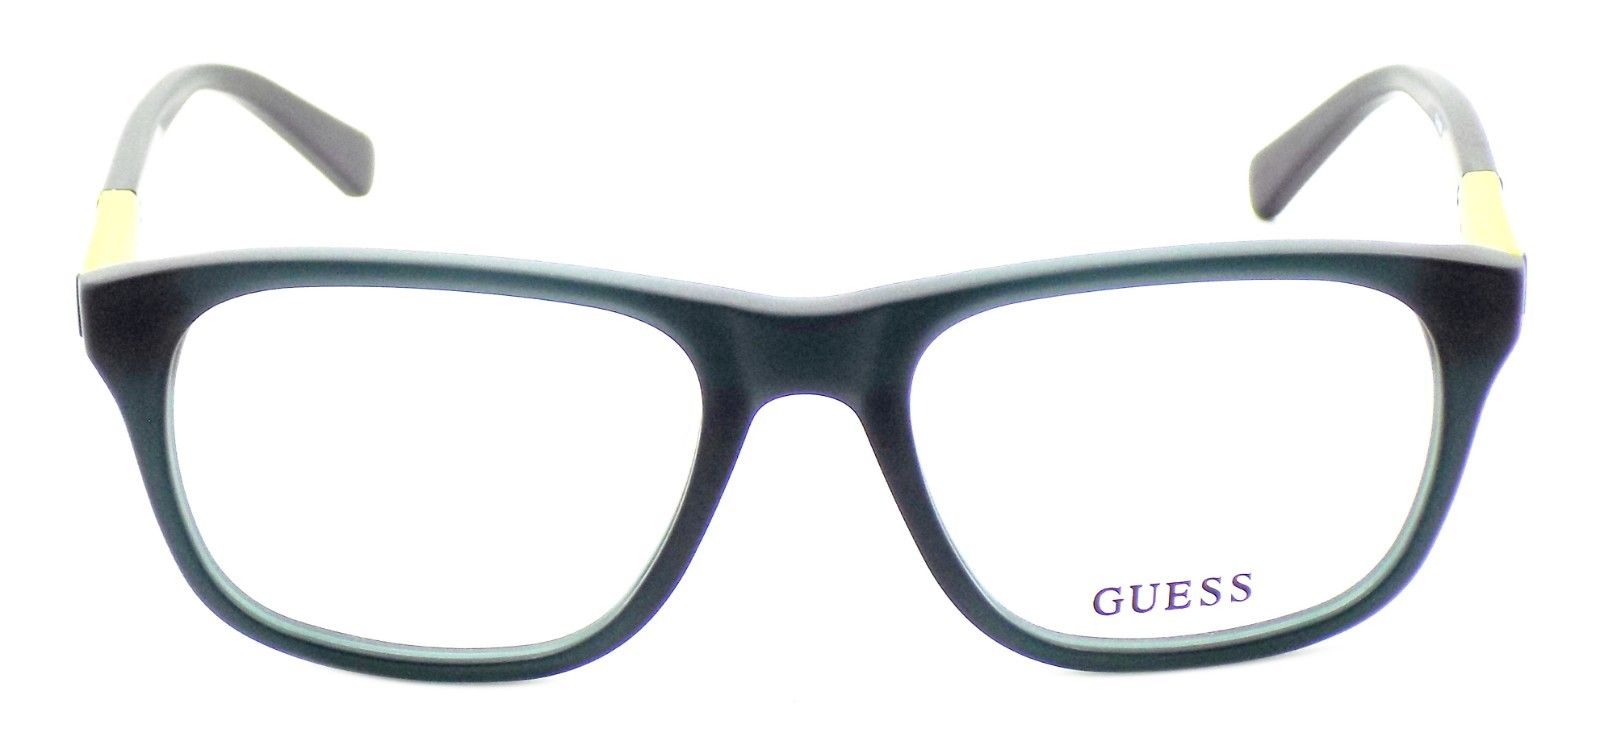 2-GUESS GU1866 097 Men's Eyeglasses Frames 53-18-145 Matte Dark Green + CASE-664689696246-IKSpecs